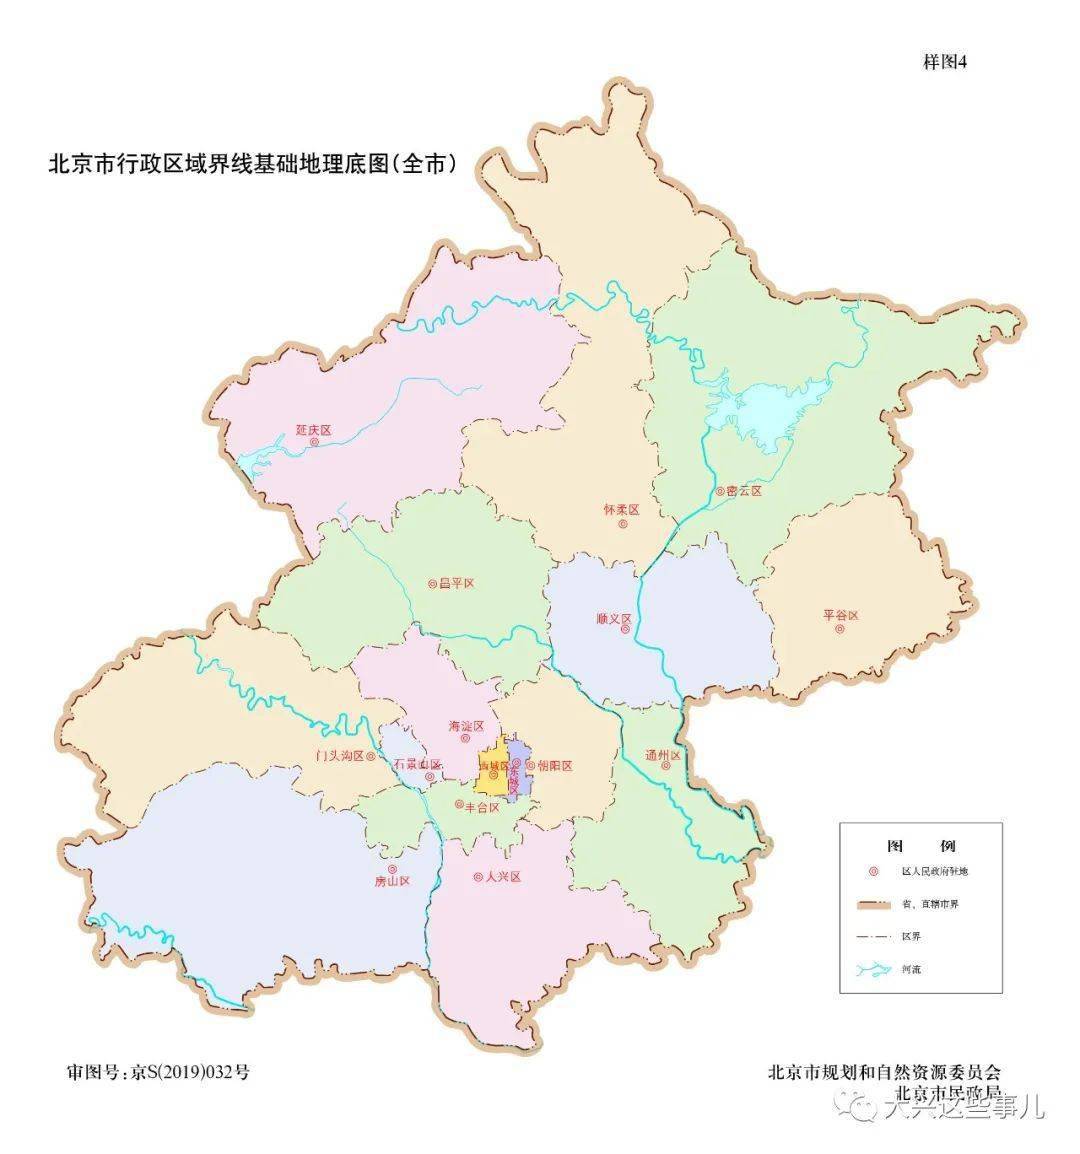 事儿君给大家切割放大看看~ 下边这个是2019版北京市的全图,大兴区的